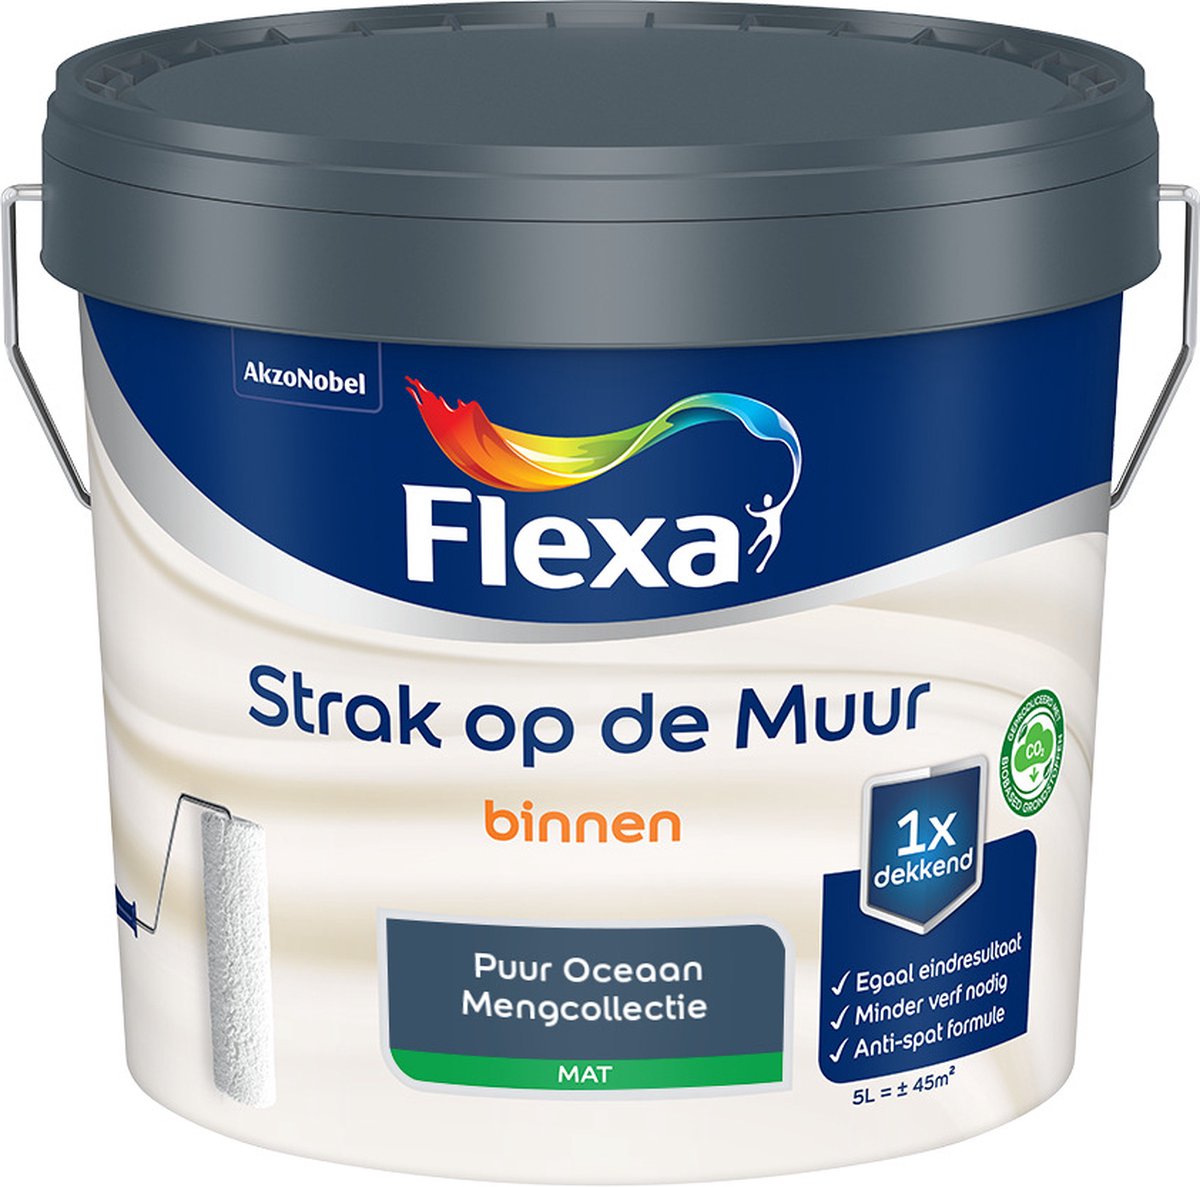 Flexa Strak op de muur - Muurverf - Mengcollectie - Puur Oceaan - 5 Liter